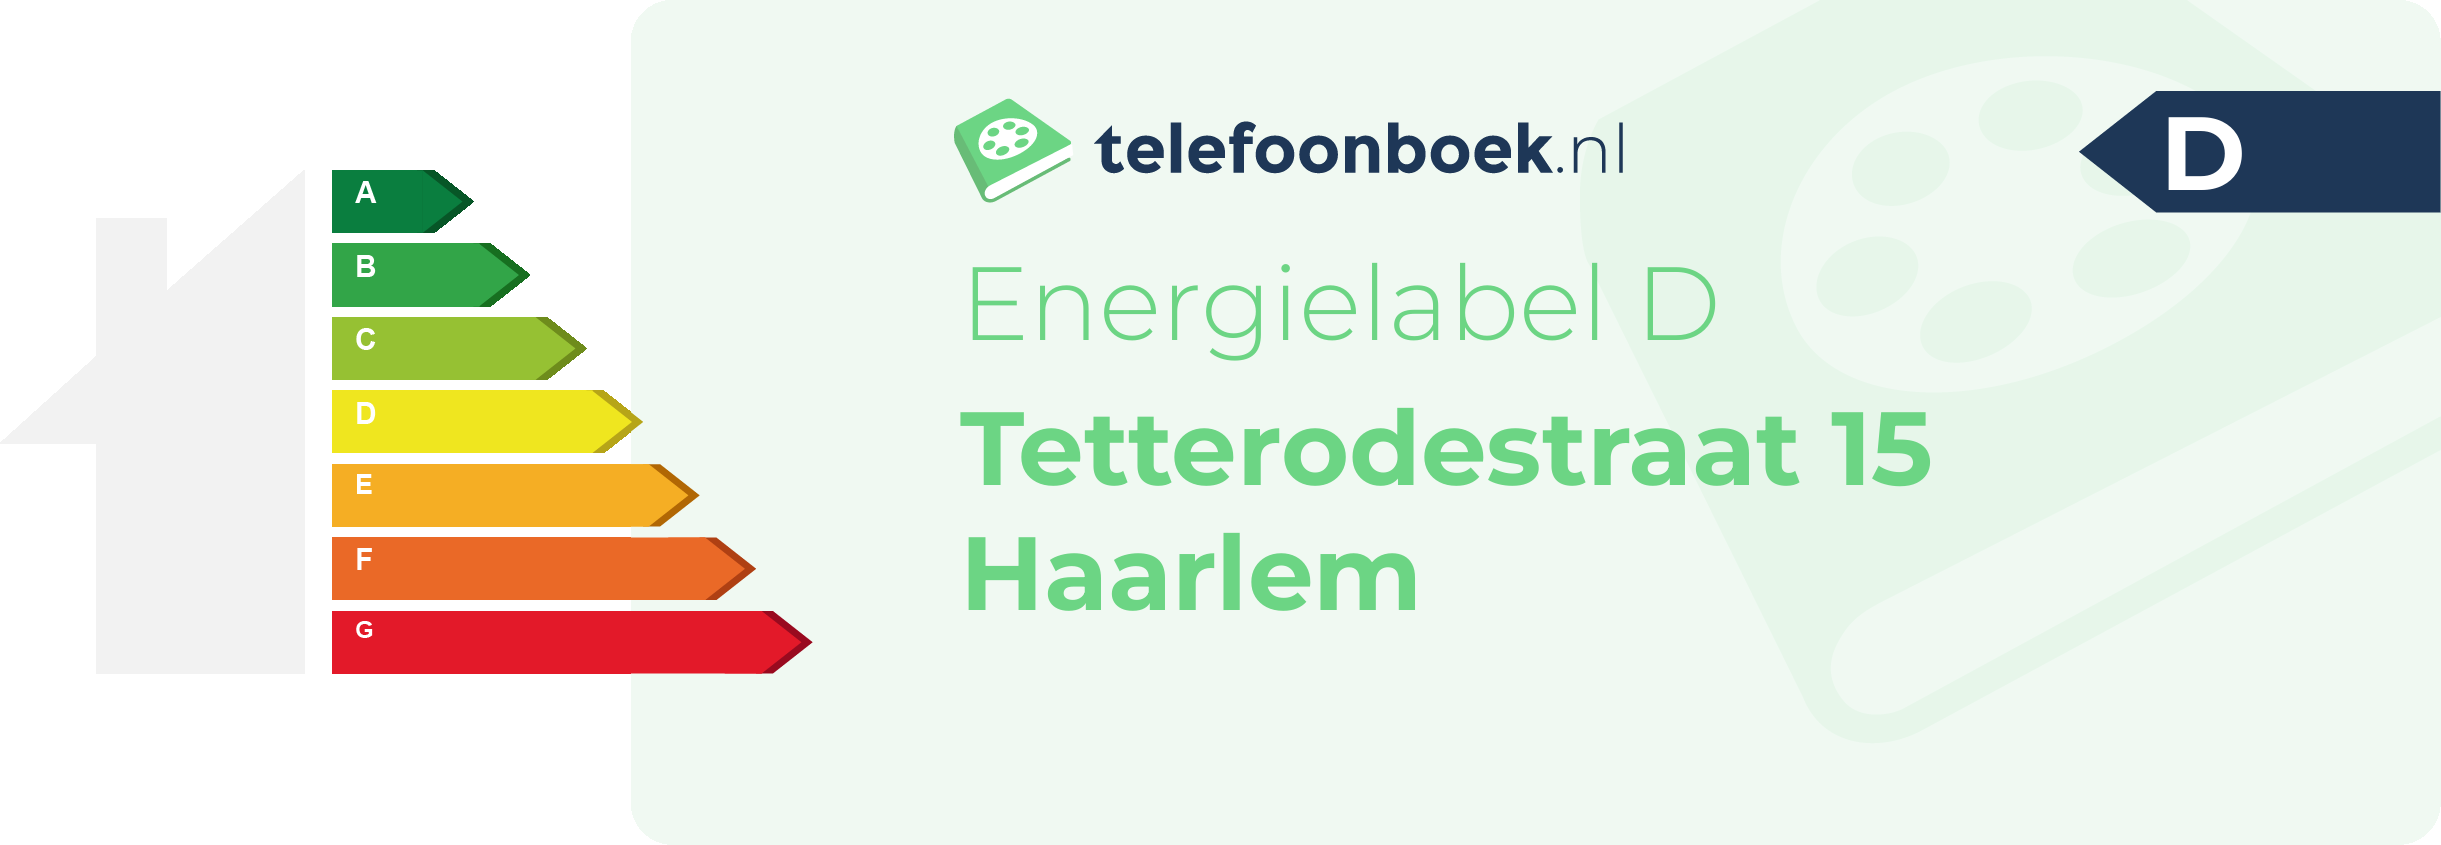 Energielabel Tetterodestraat 15 Haarlem